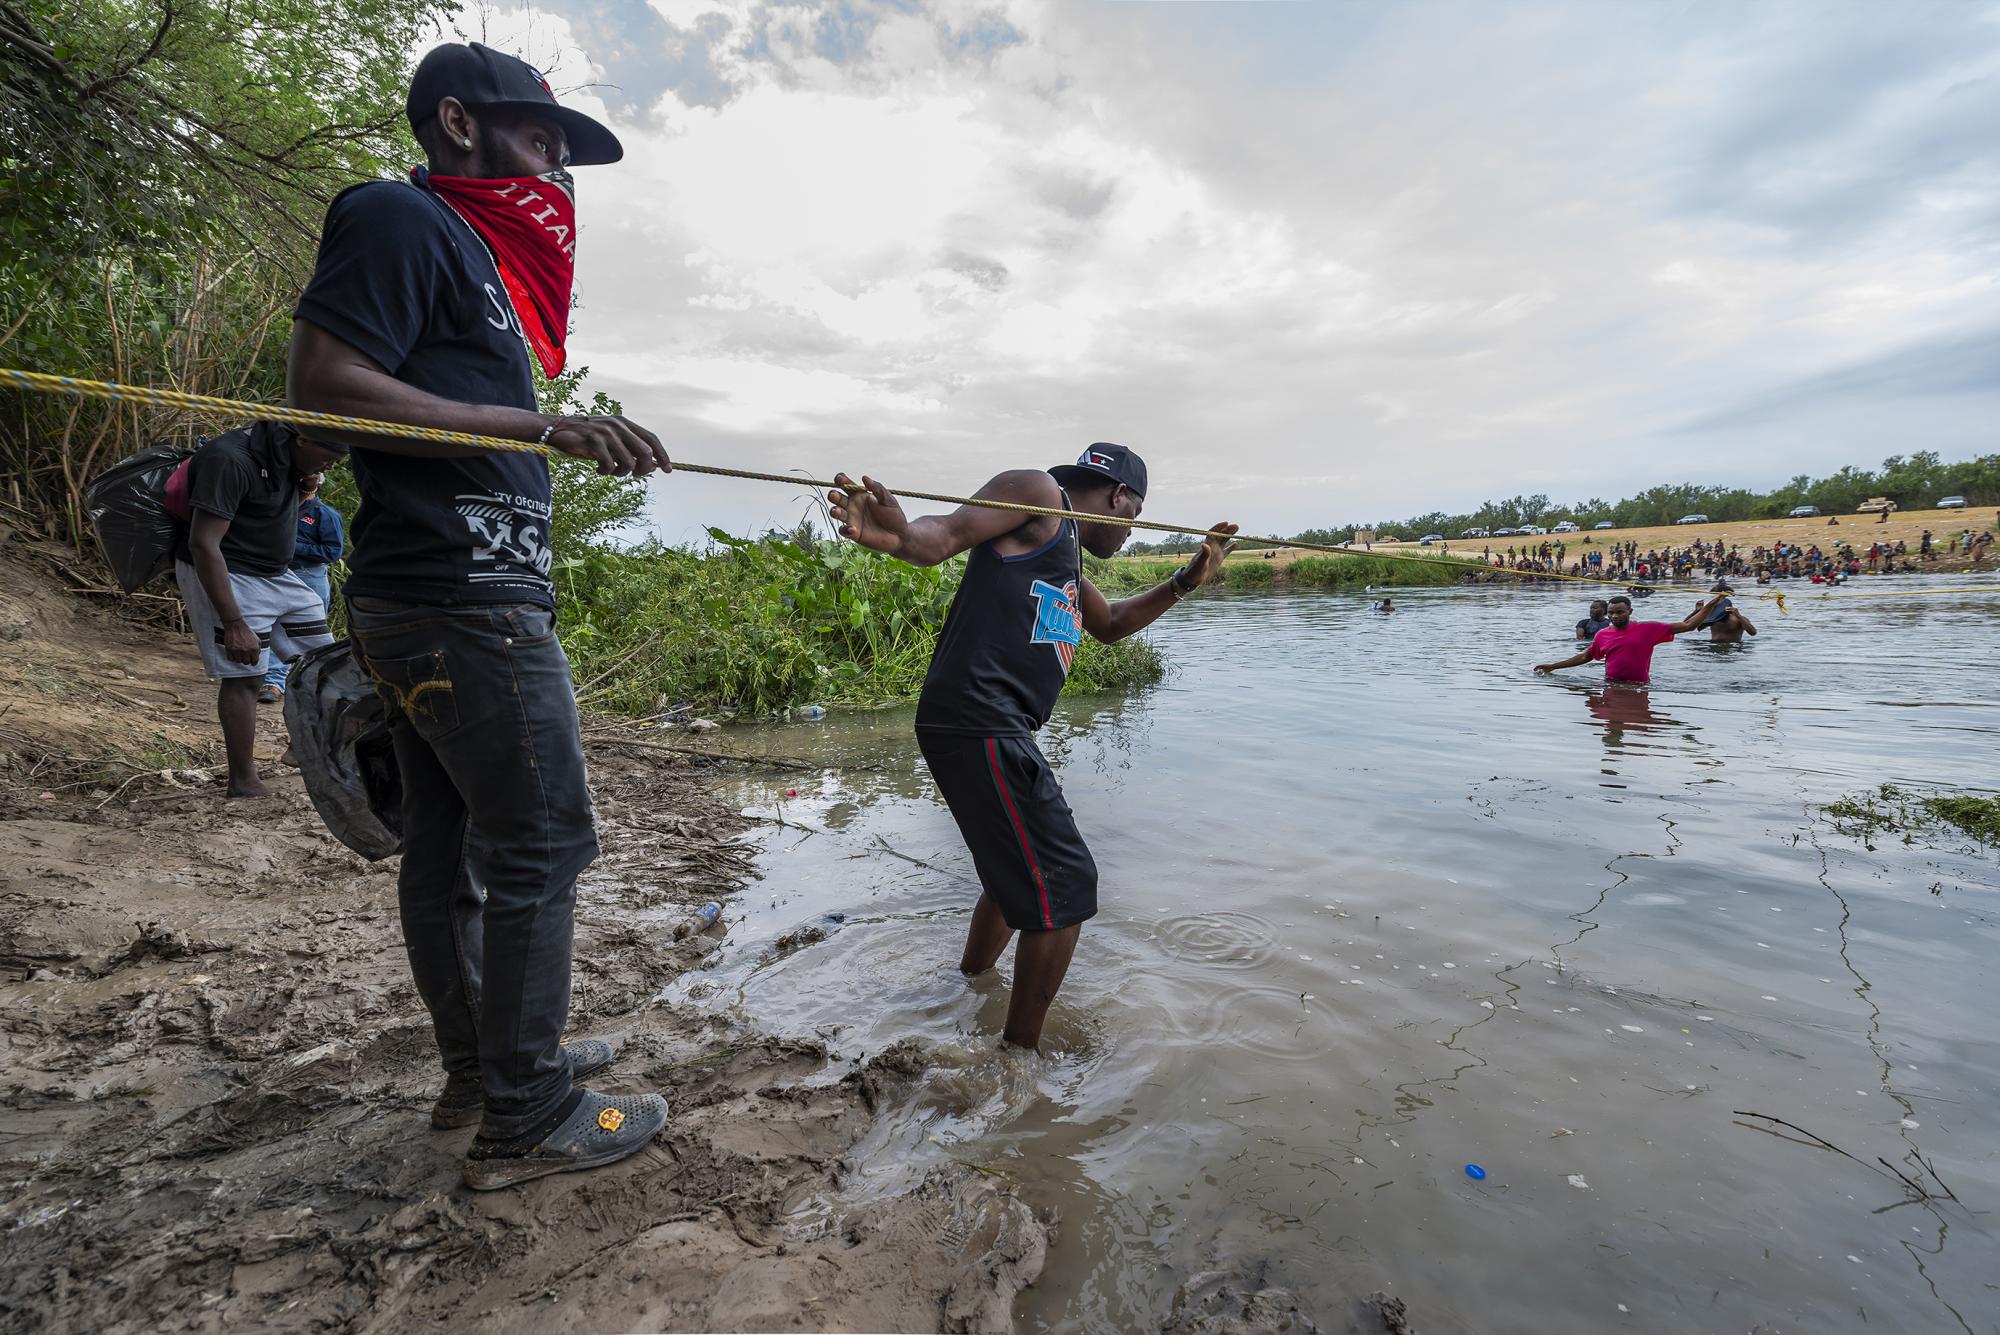 $!Crisis migratoria: un sueño que se disipó en la frontera Acuña-Del Río